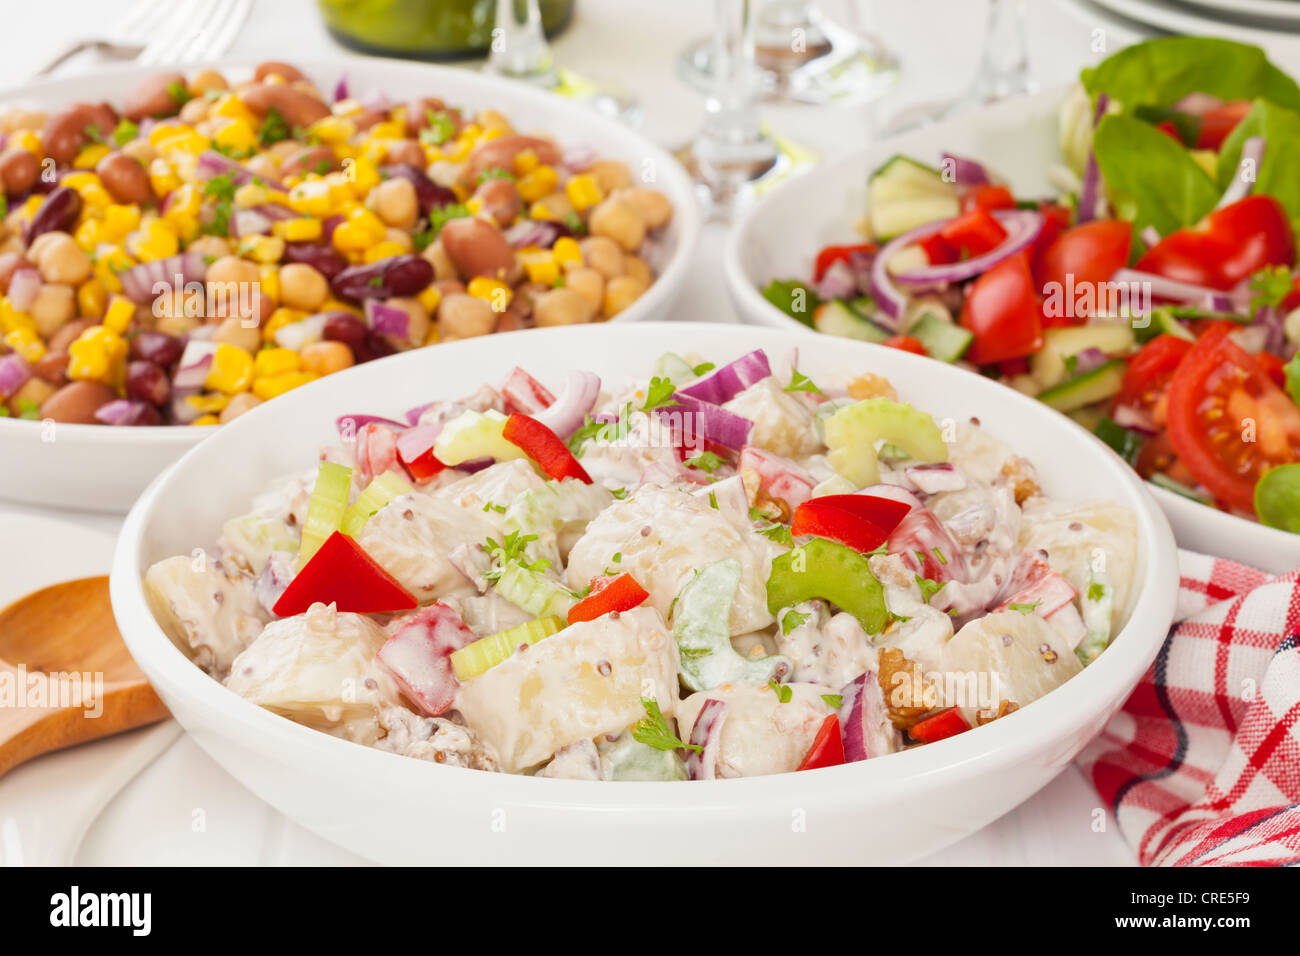 Eine Auswahl an Salaten auf einem Buffet-Tisch Stockfoto